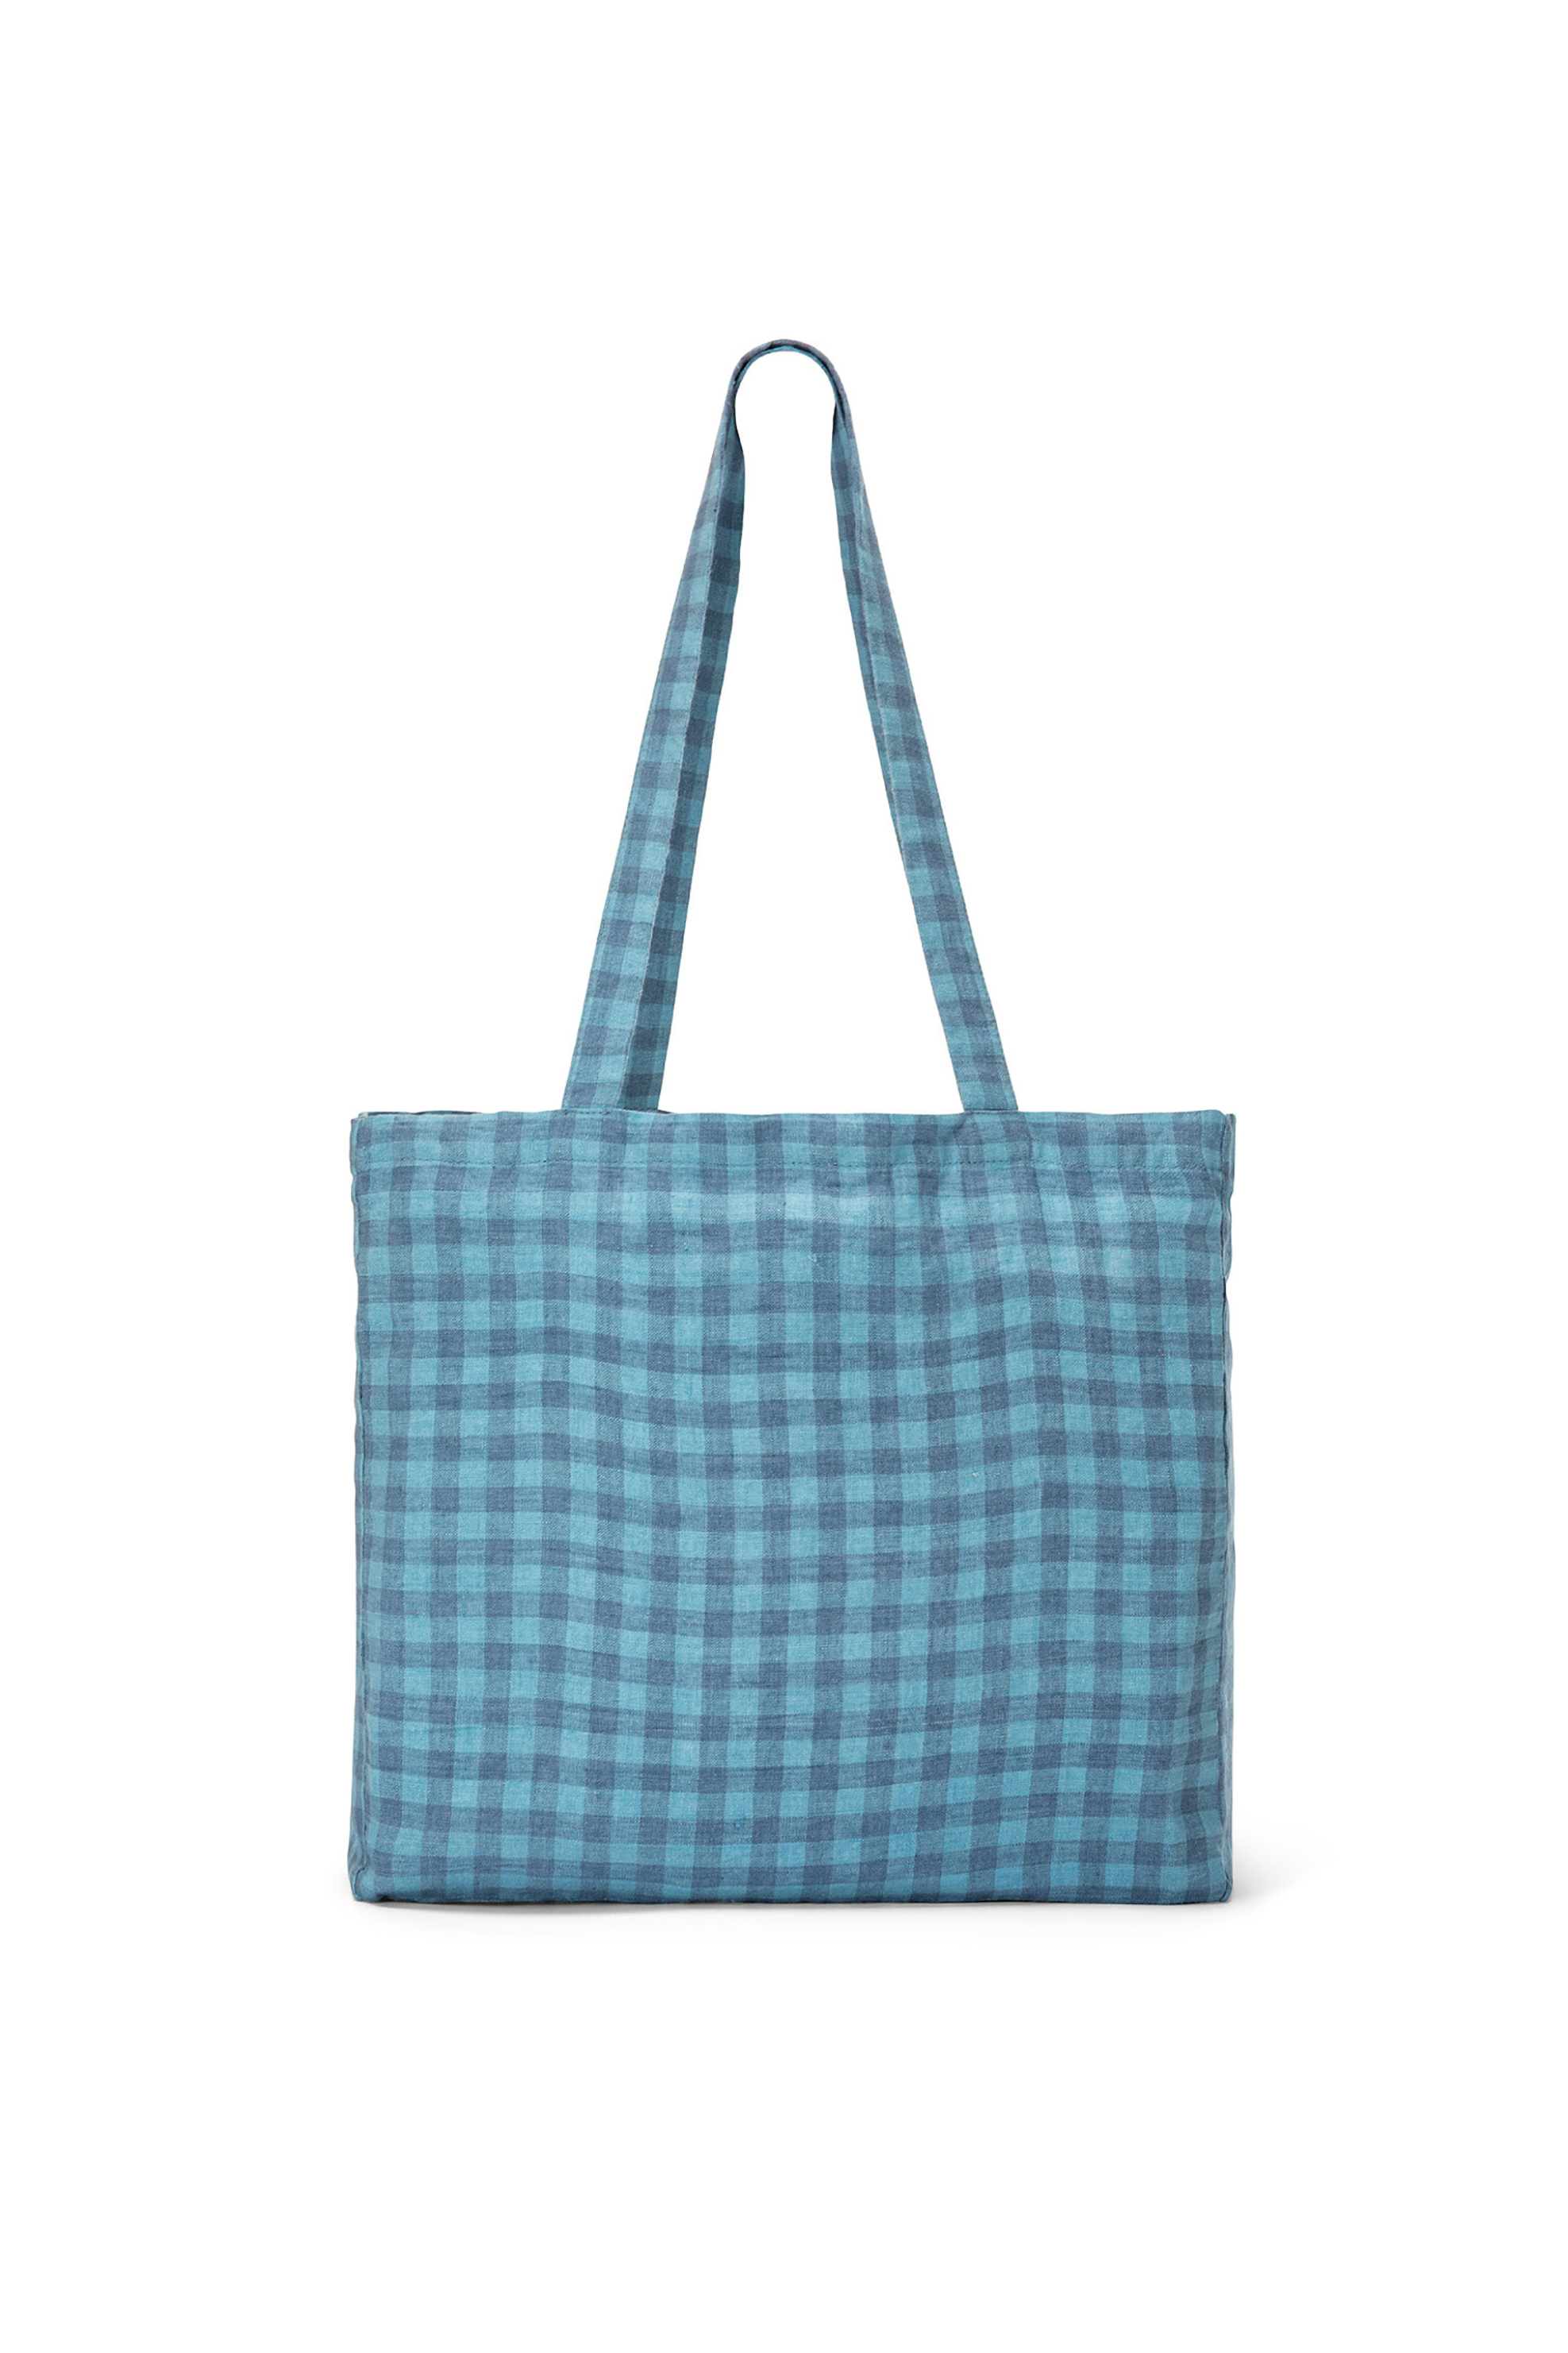 Home > ΚΟΥΖΙΝΑ > Είδη μεταφοράς > Τσάντες για ψώνια Coincasa τσάντα για ψώνια λινή με καρό σχέδιο "Vichy" 35 x 35 x 10 cm - 007245974 Γαλάζιο